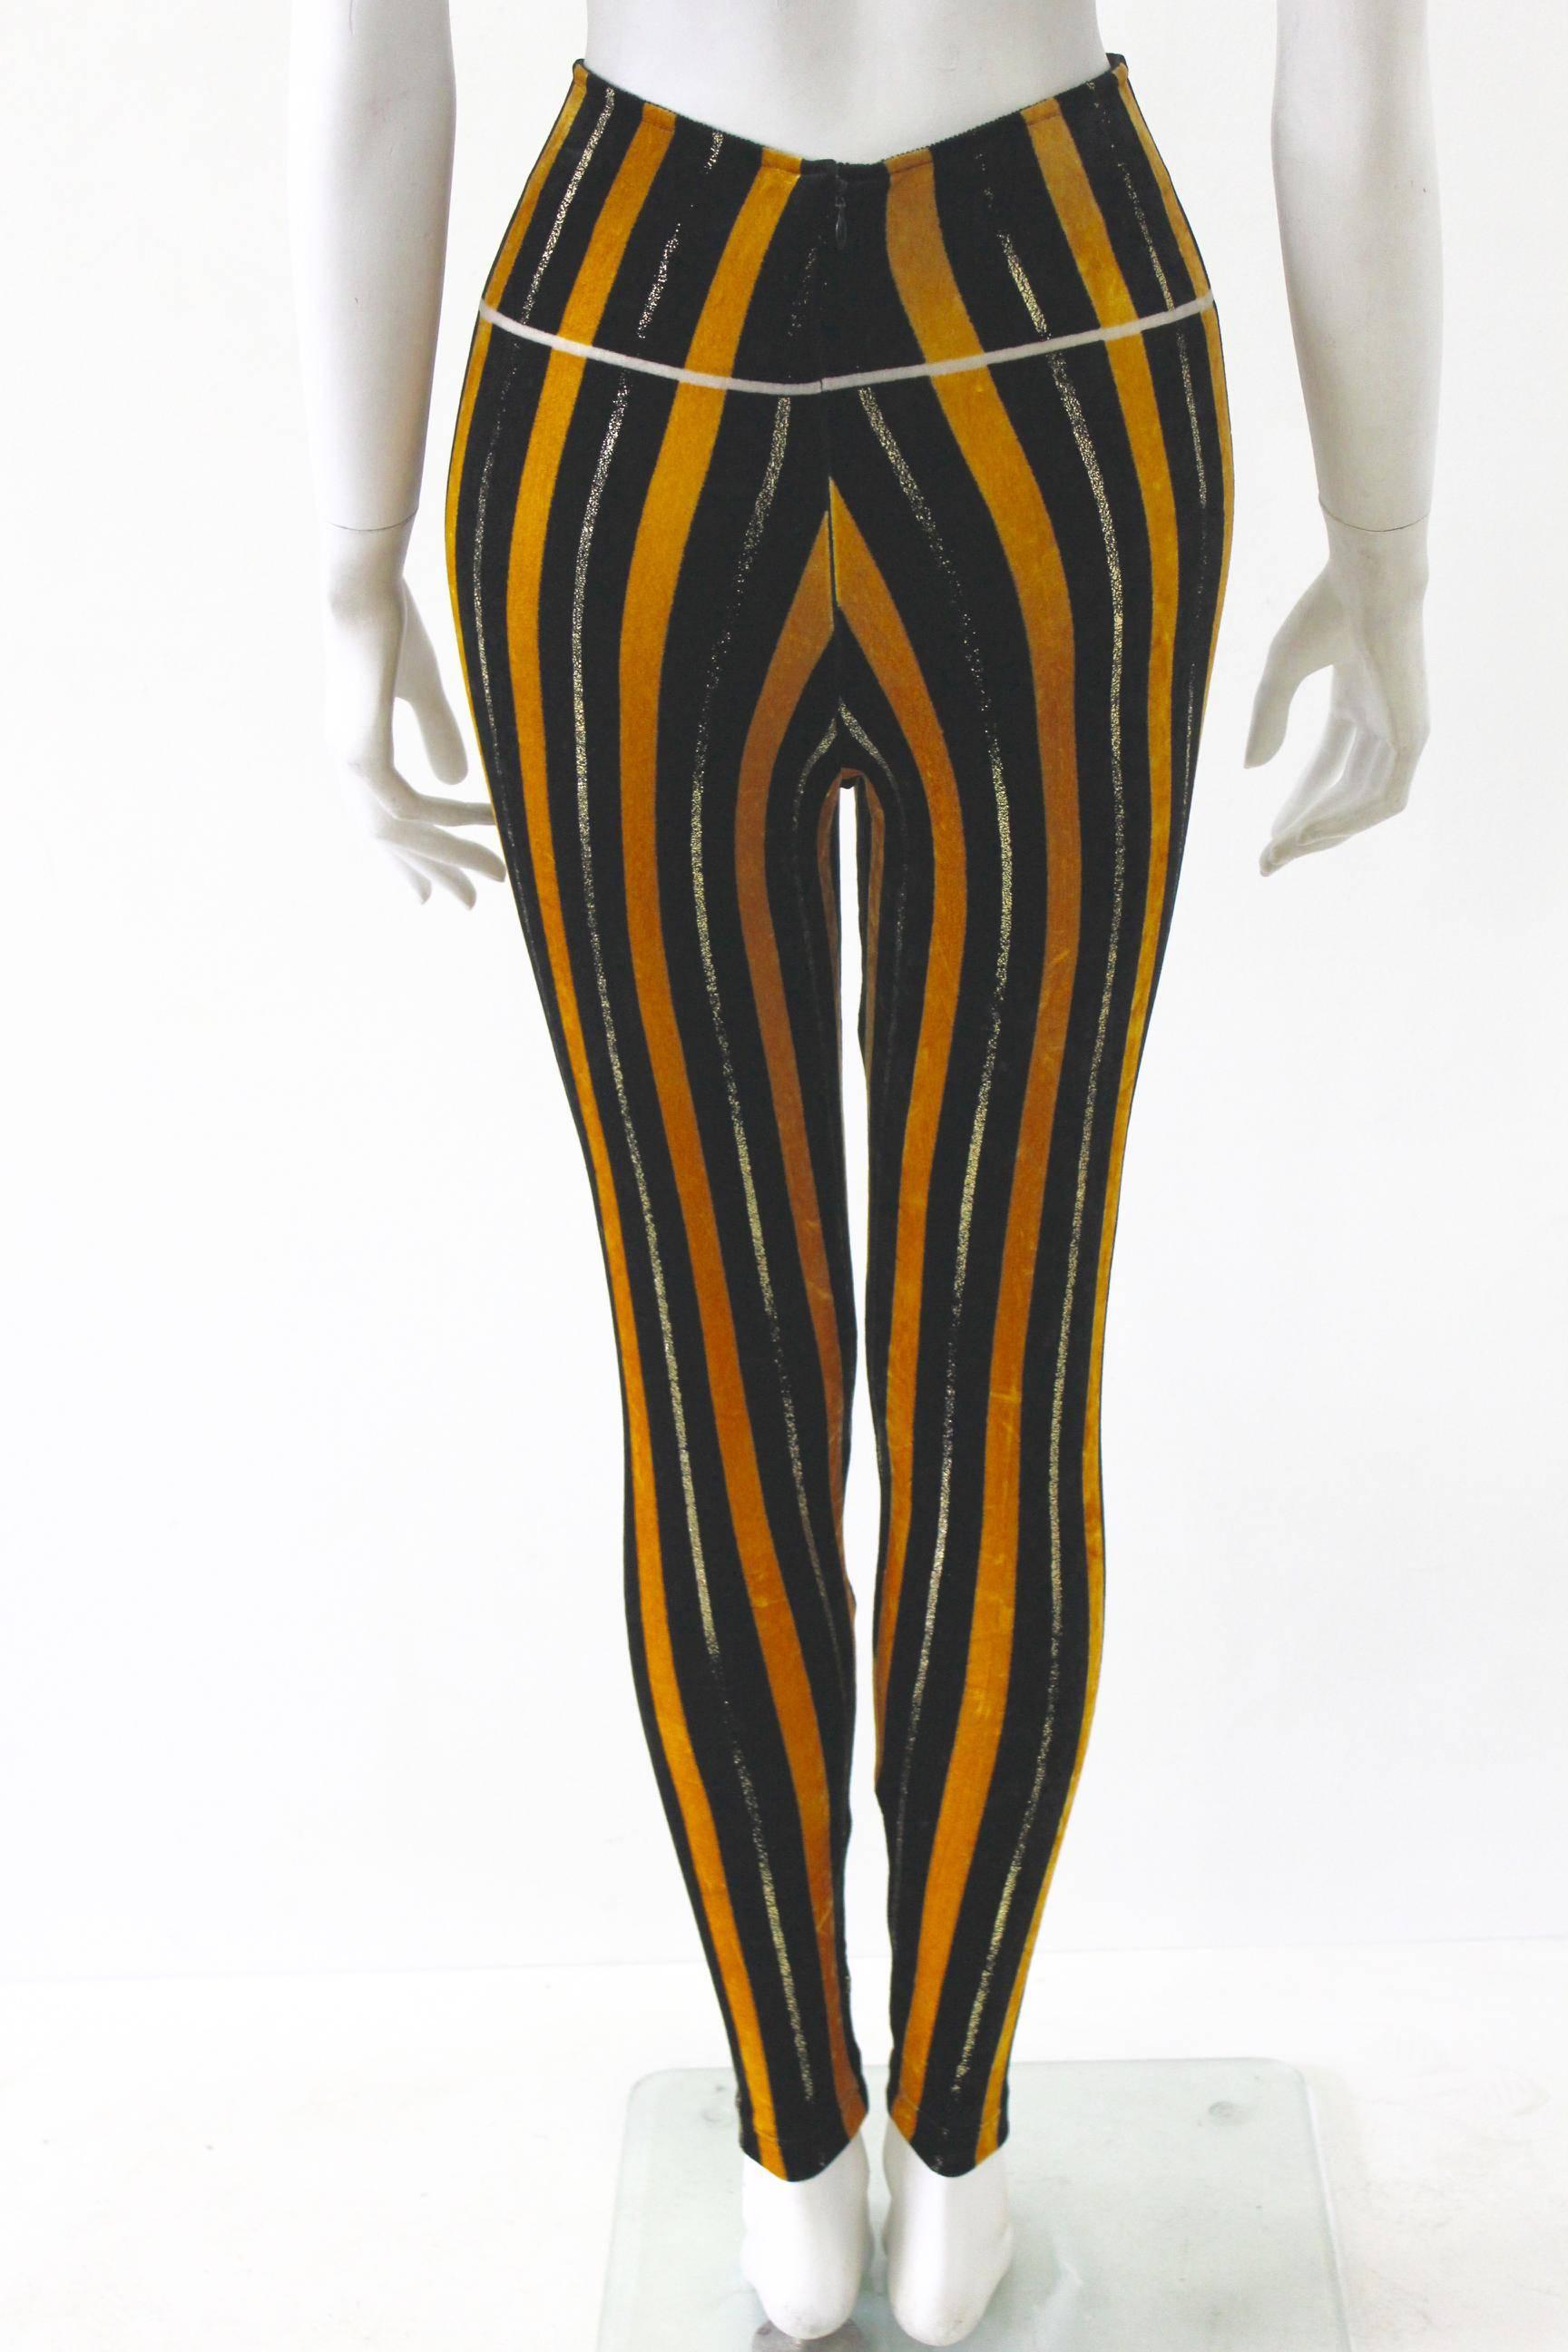 Women's Rare Gianni Versace Couture Stripe Velvet Strech Leggings Fall 1994 For Sale